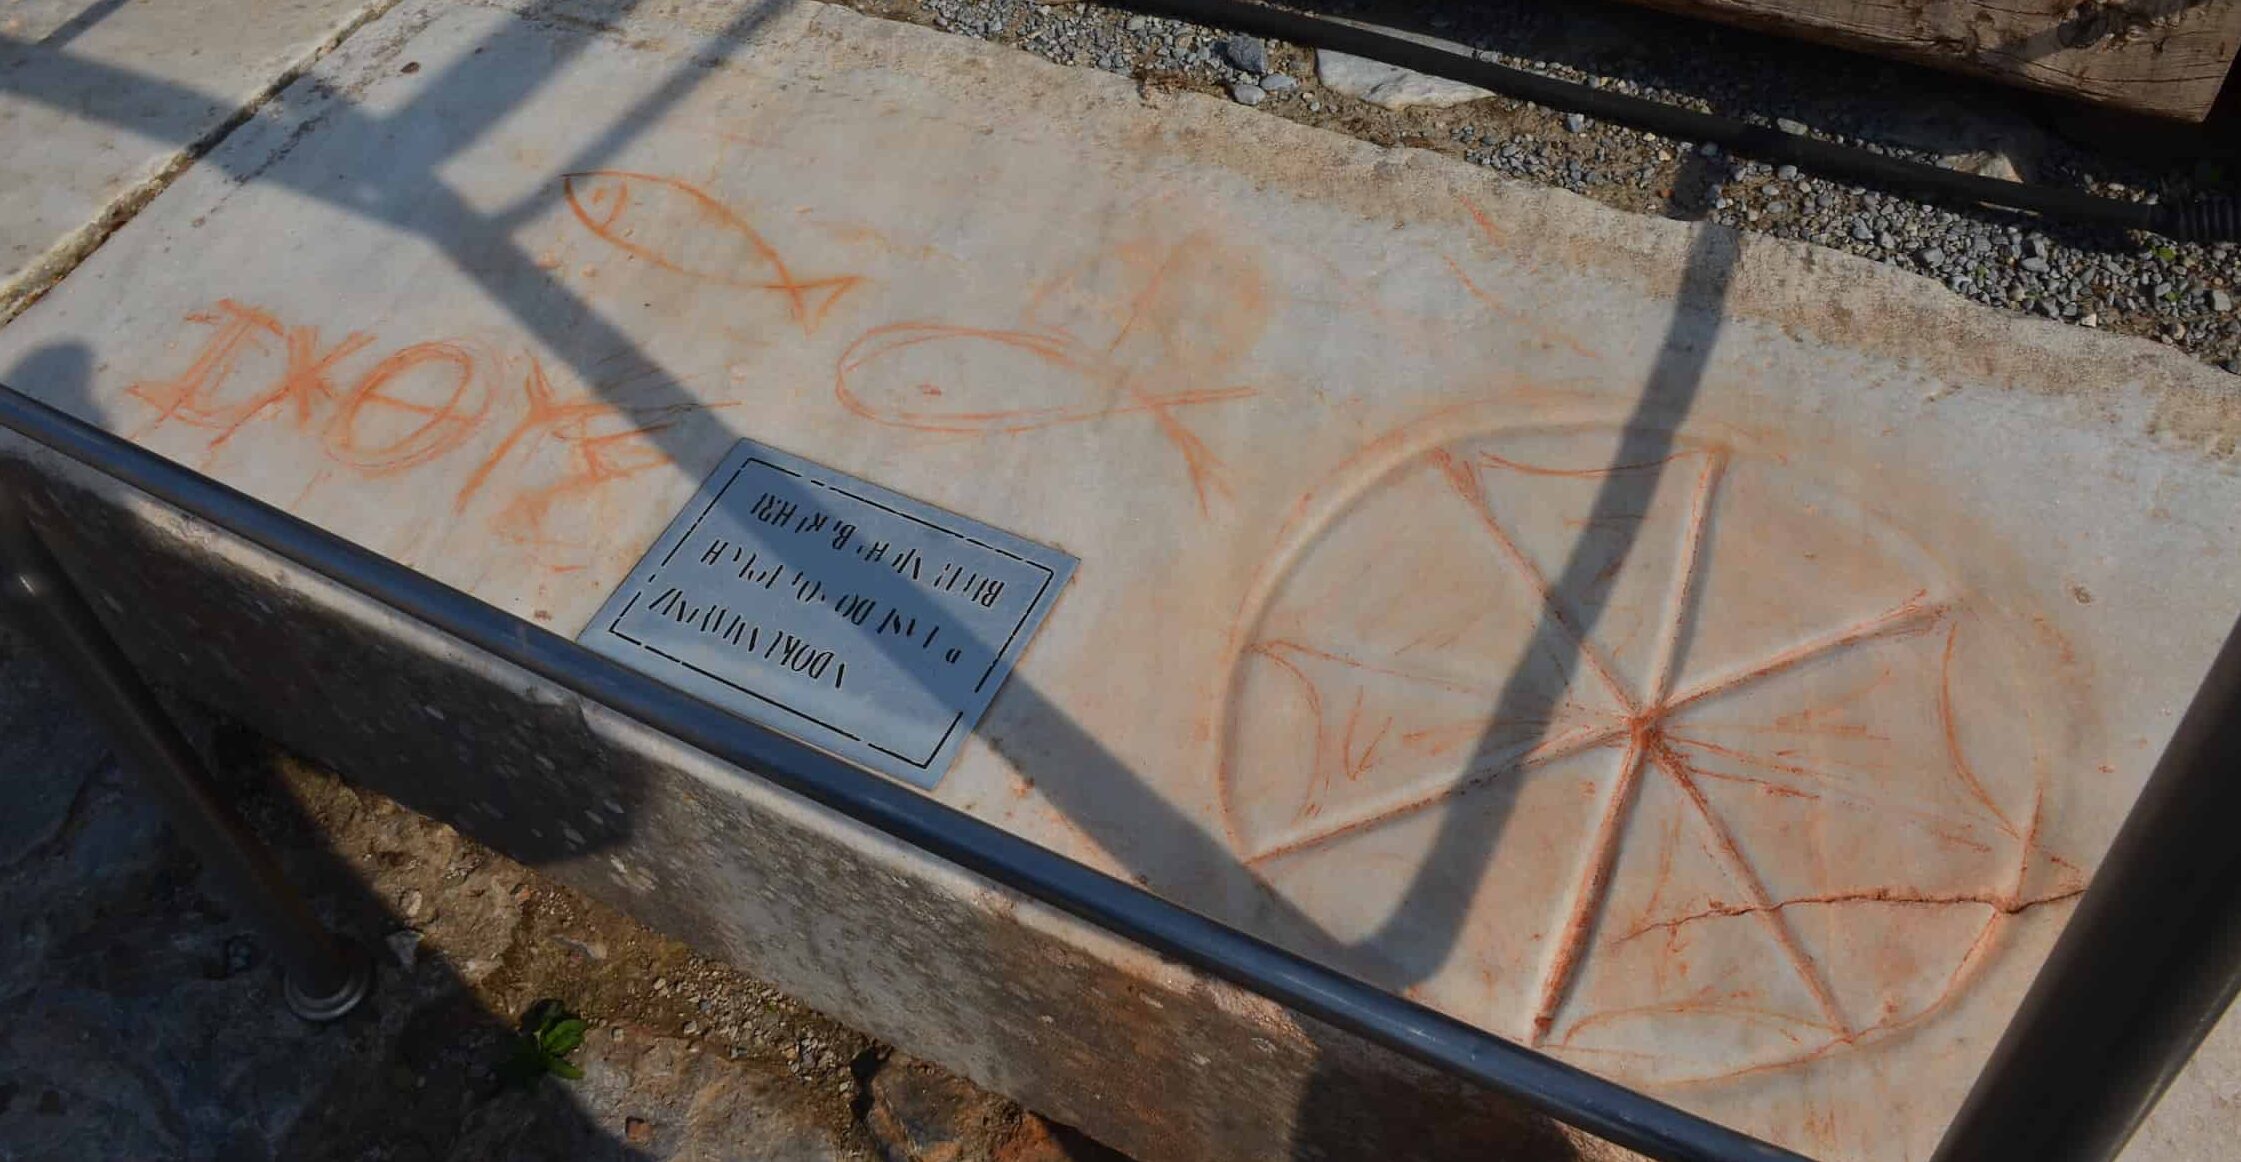 ΙΧΘΥΣ demonstration near the State Agora in Ephesus